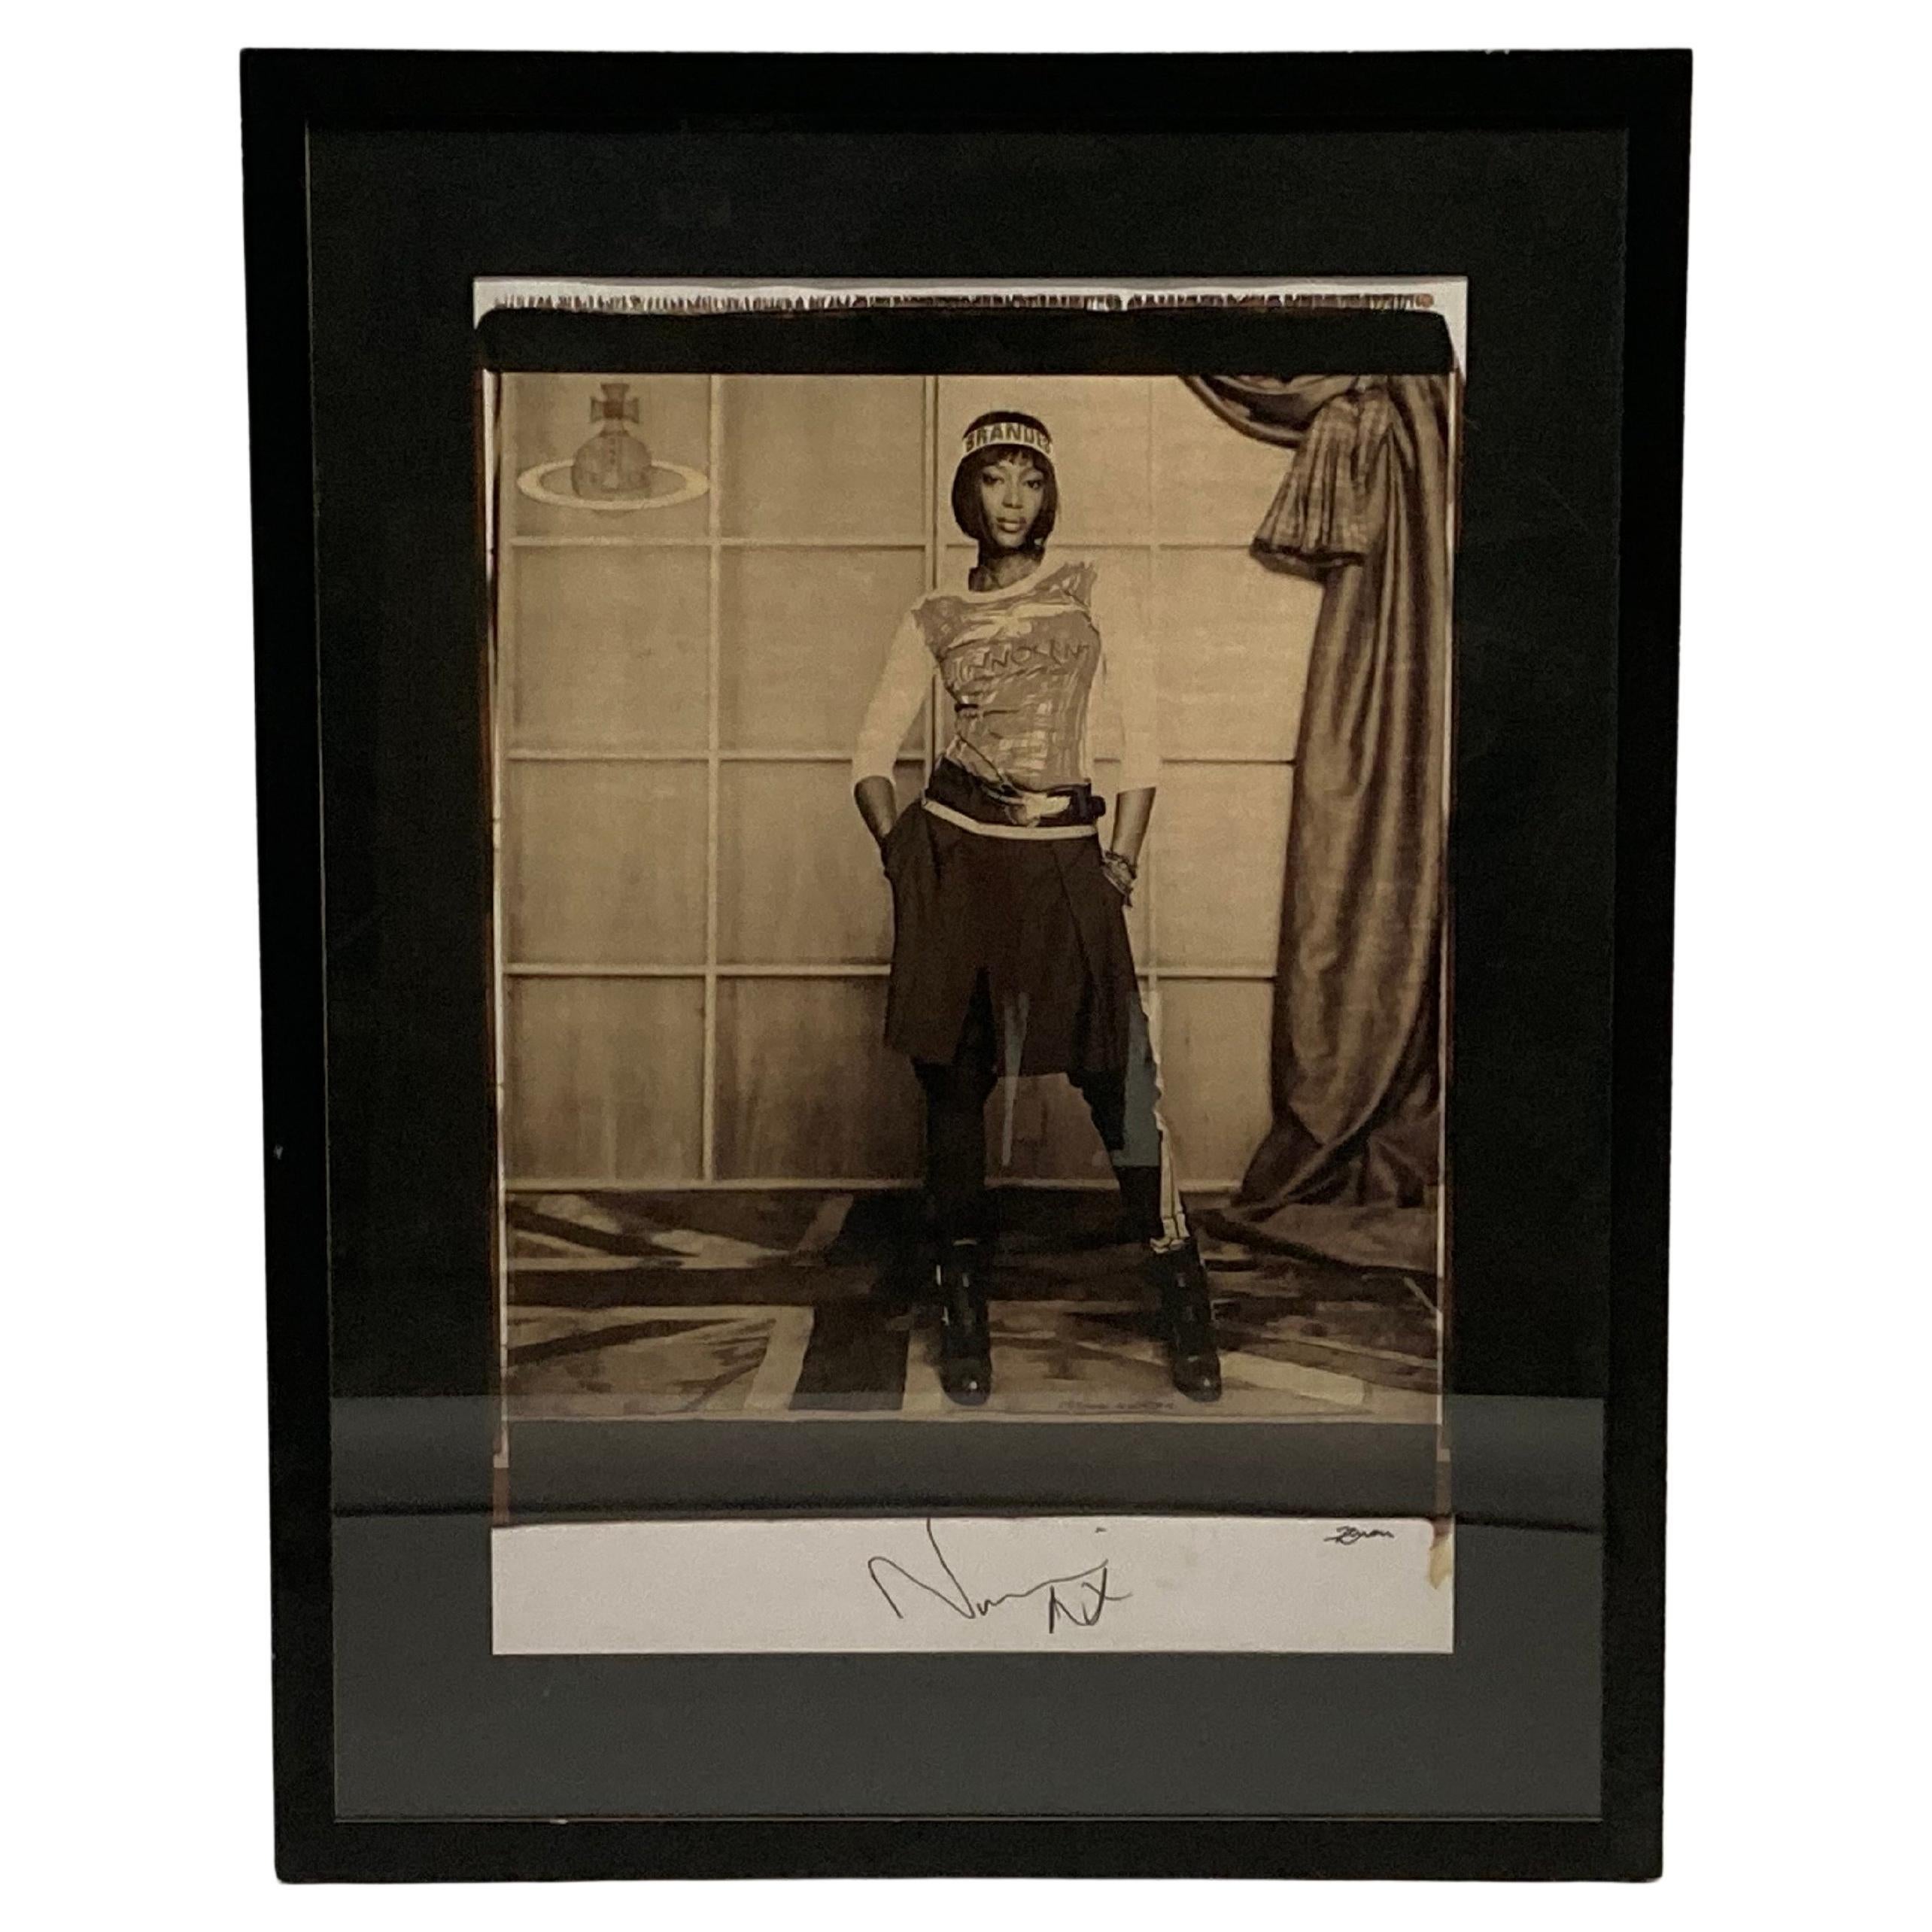 Großformatiges Polaroid-Foto, signiert Naomi Campbell für Vivienne Westwood, 2008